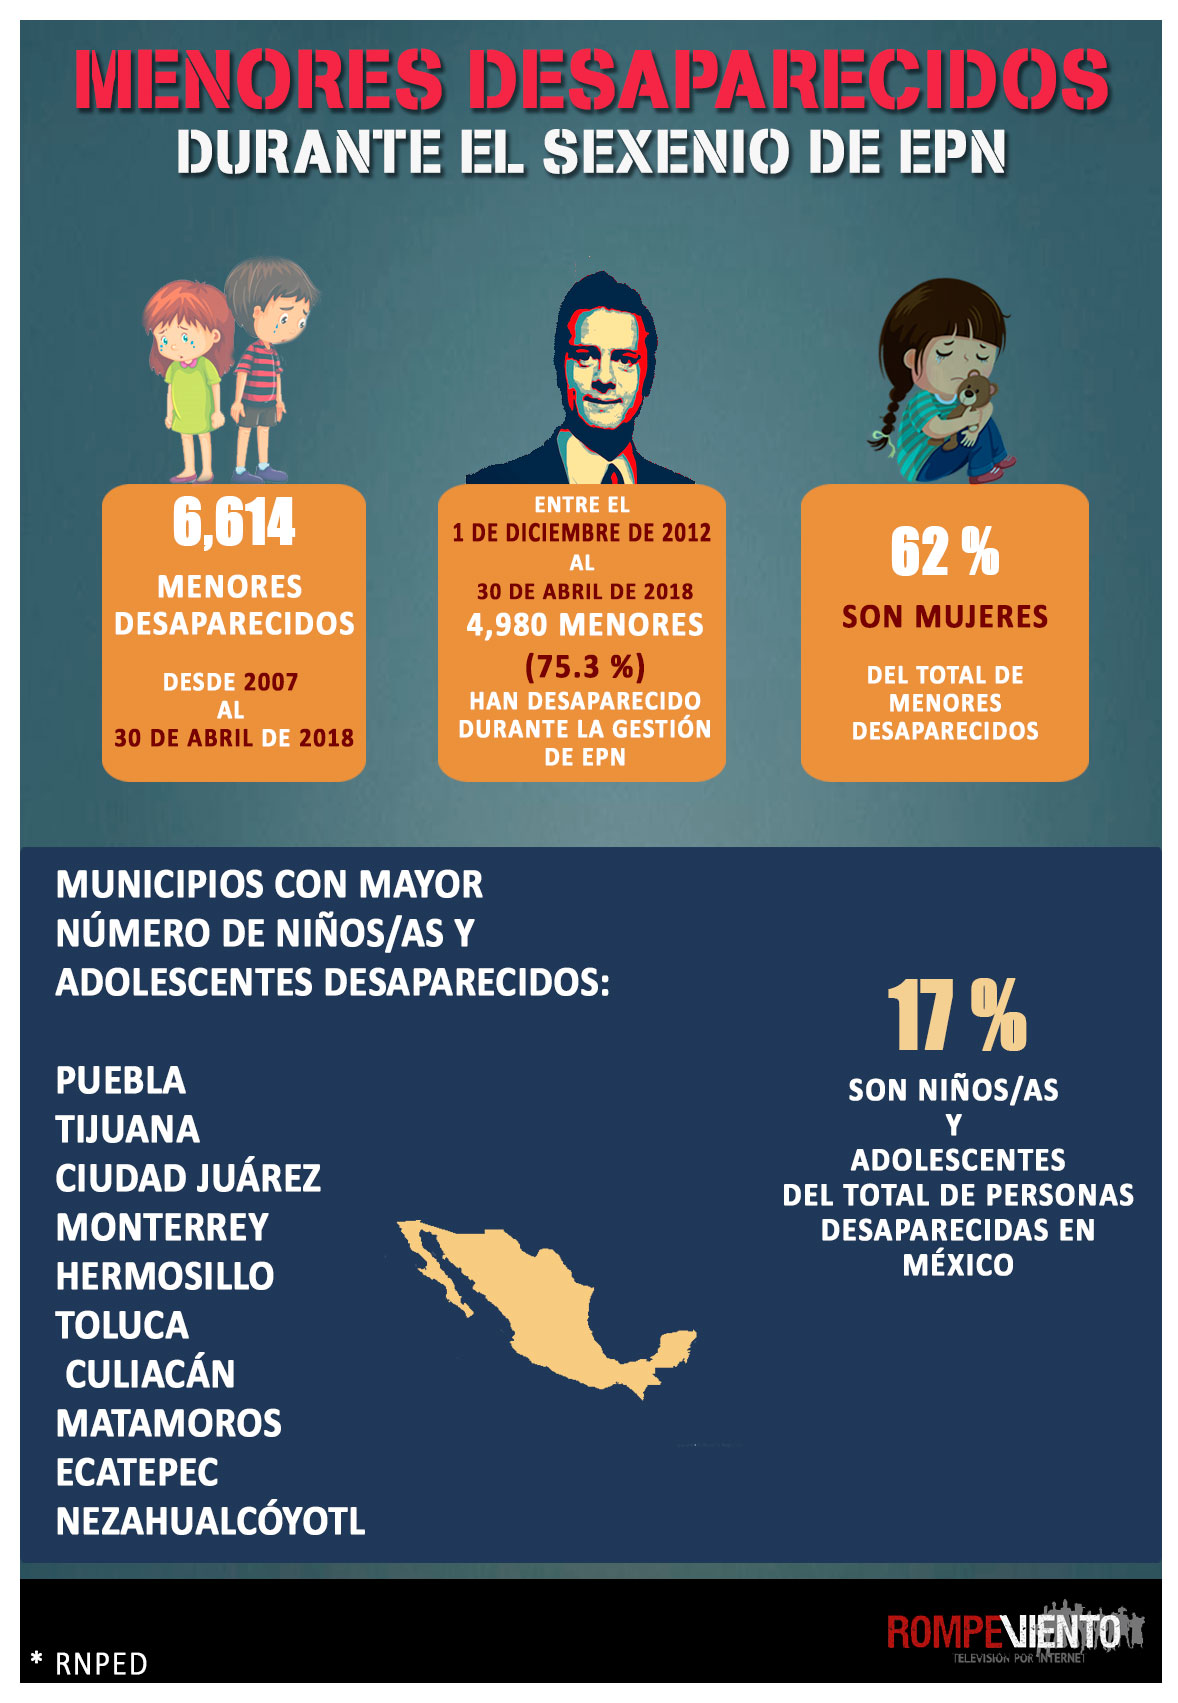 Los niños desaparecidos en el sexenio de Enrique Peña Nieto - 09/10/2018